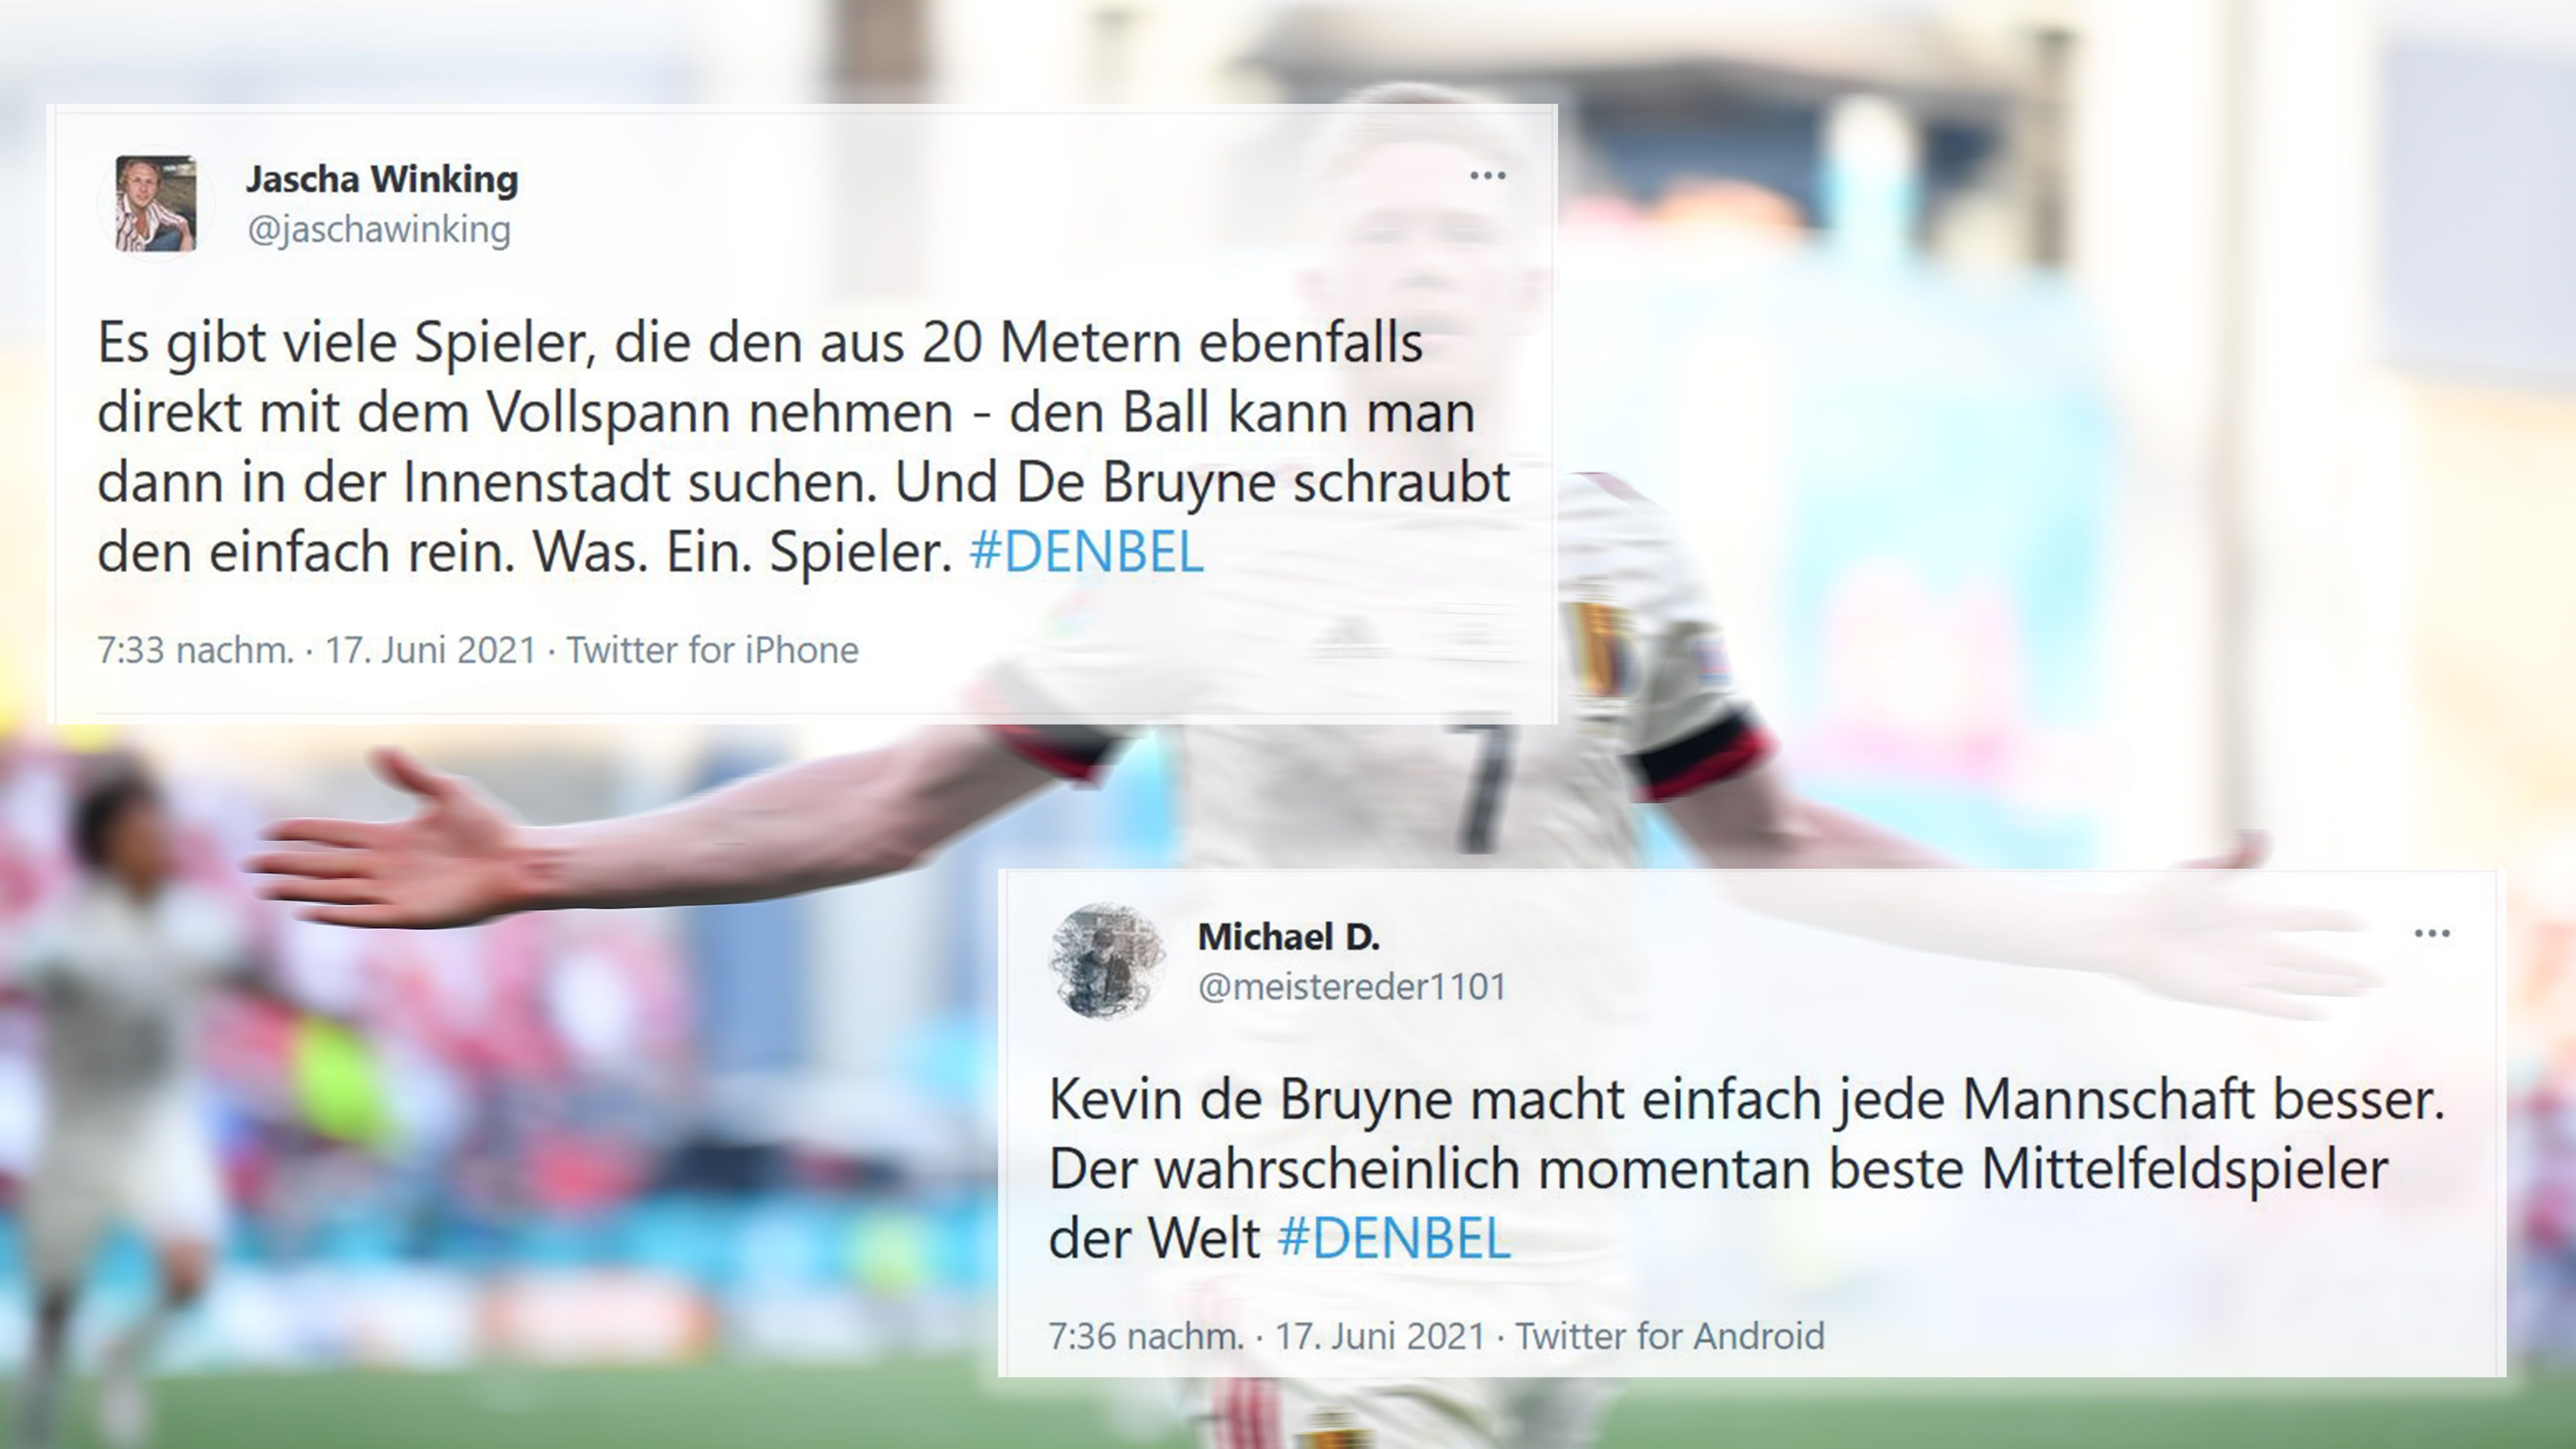 
                <strong>De Bruyne brilliert und dreht das Spiel</strong><br>
                Mann des Spiels: Kevin De Bruyne. In der Halbzeitpause eingewechselt, dreht er das Spiel mit einer Vorlage sowie einem Tor.
              